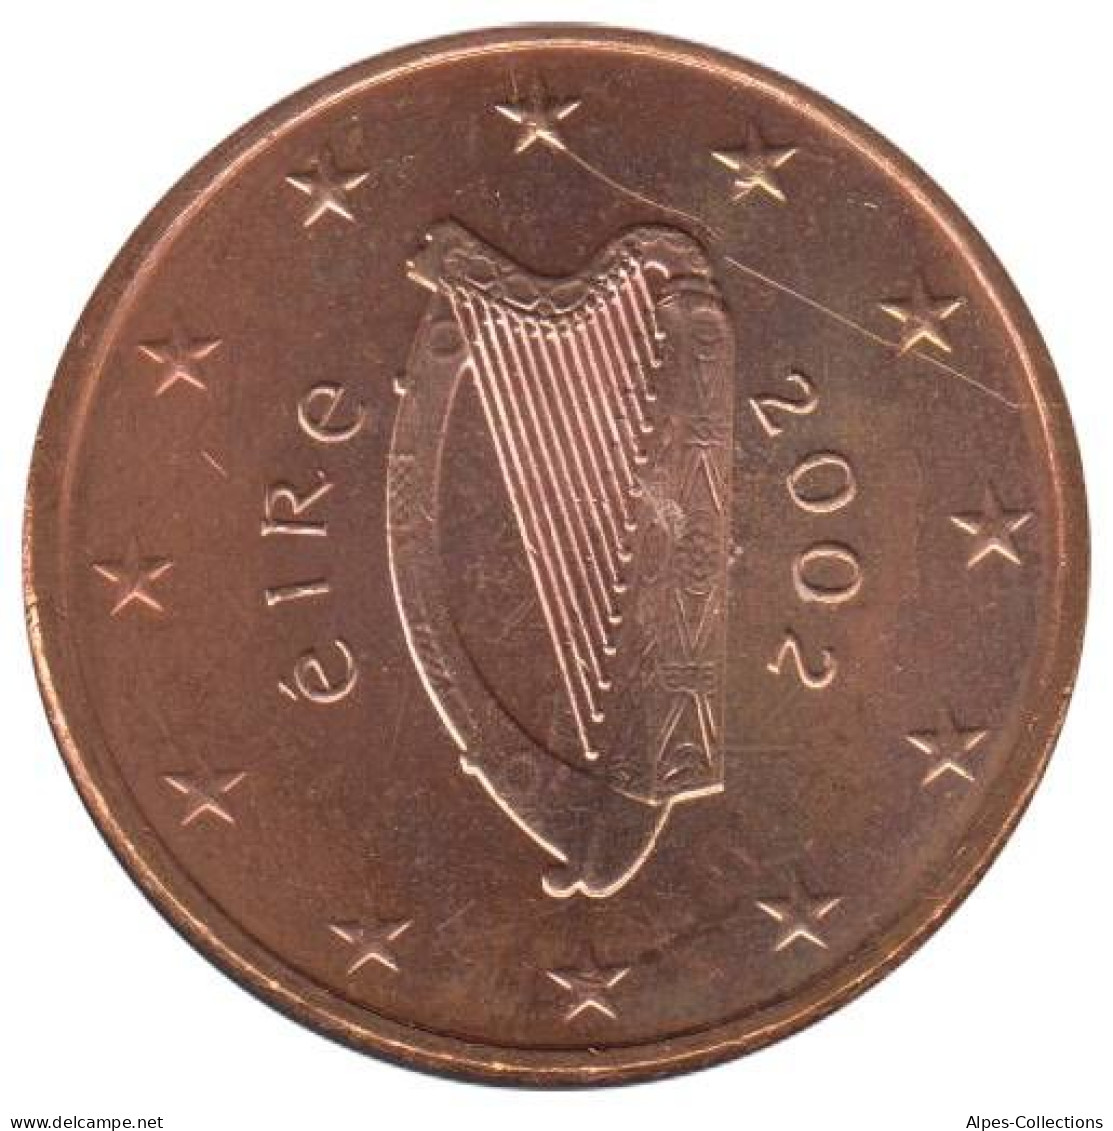 IR00502.1 - IRLANDE - 5 Cents - 2002 - Irland